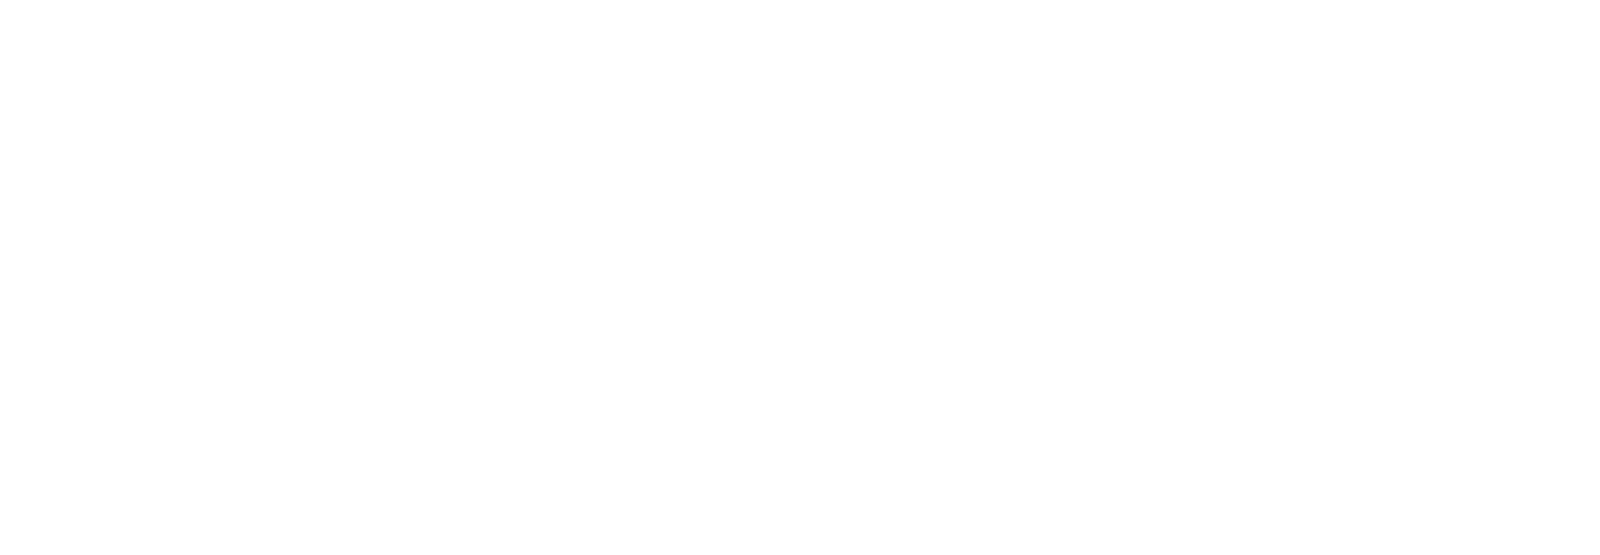  Marunouchi illumination 2019 